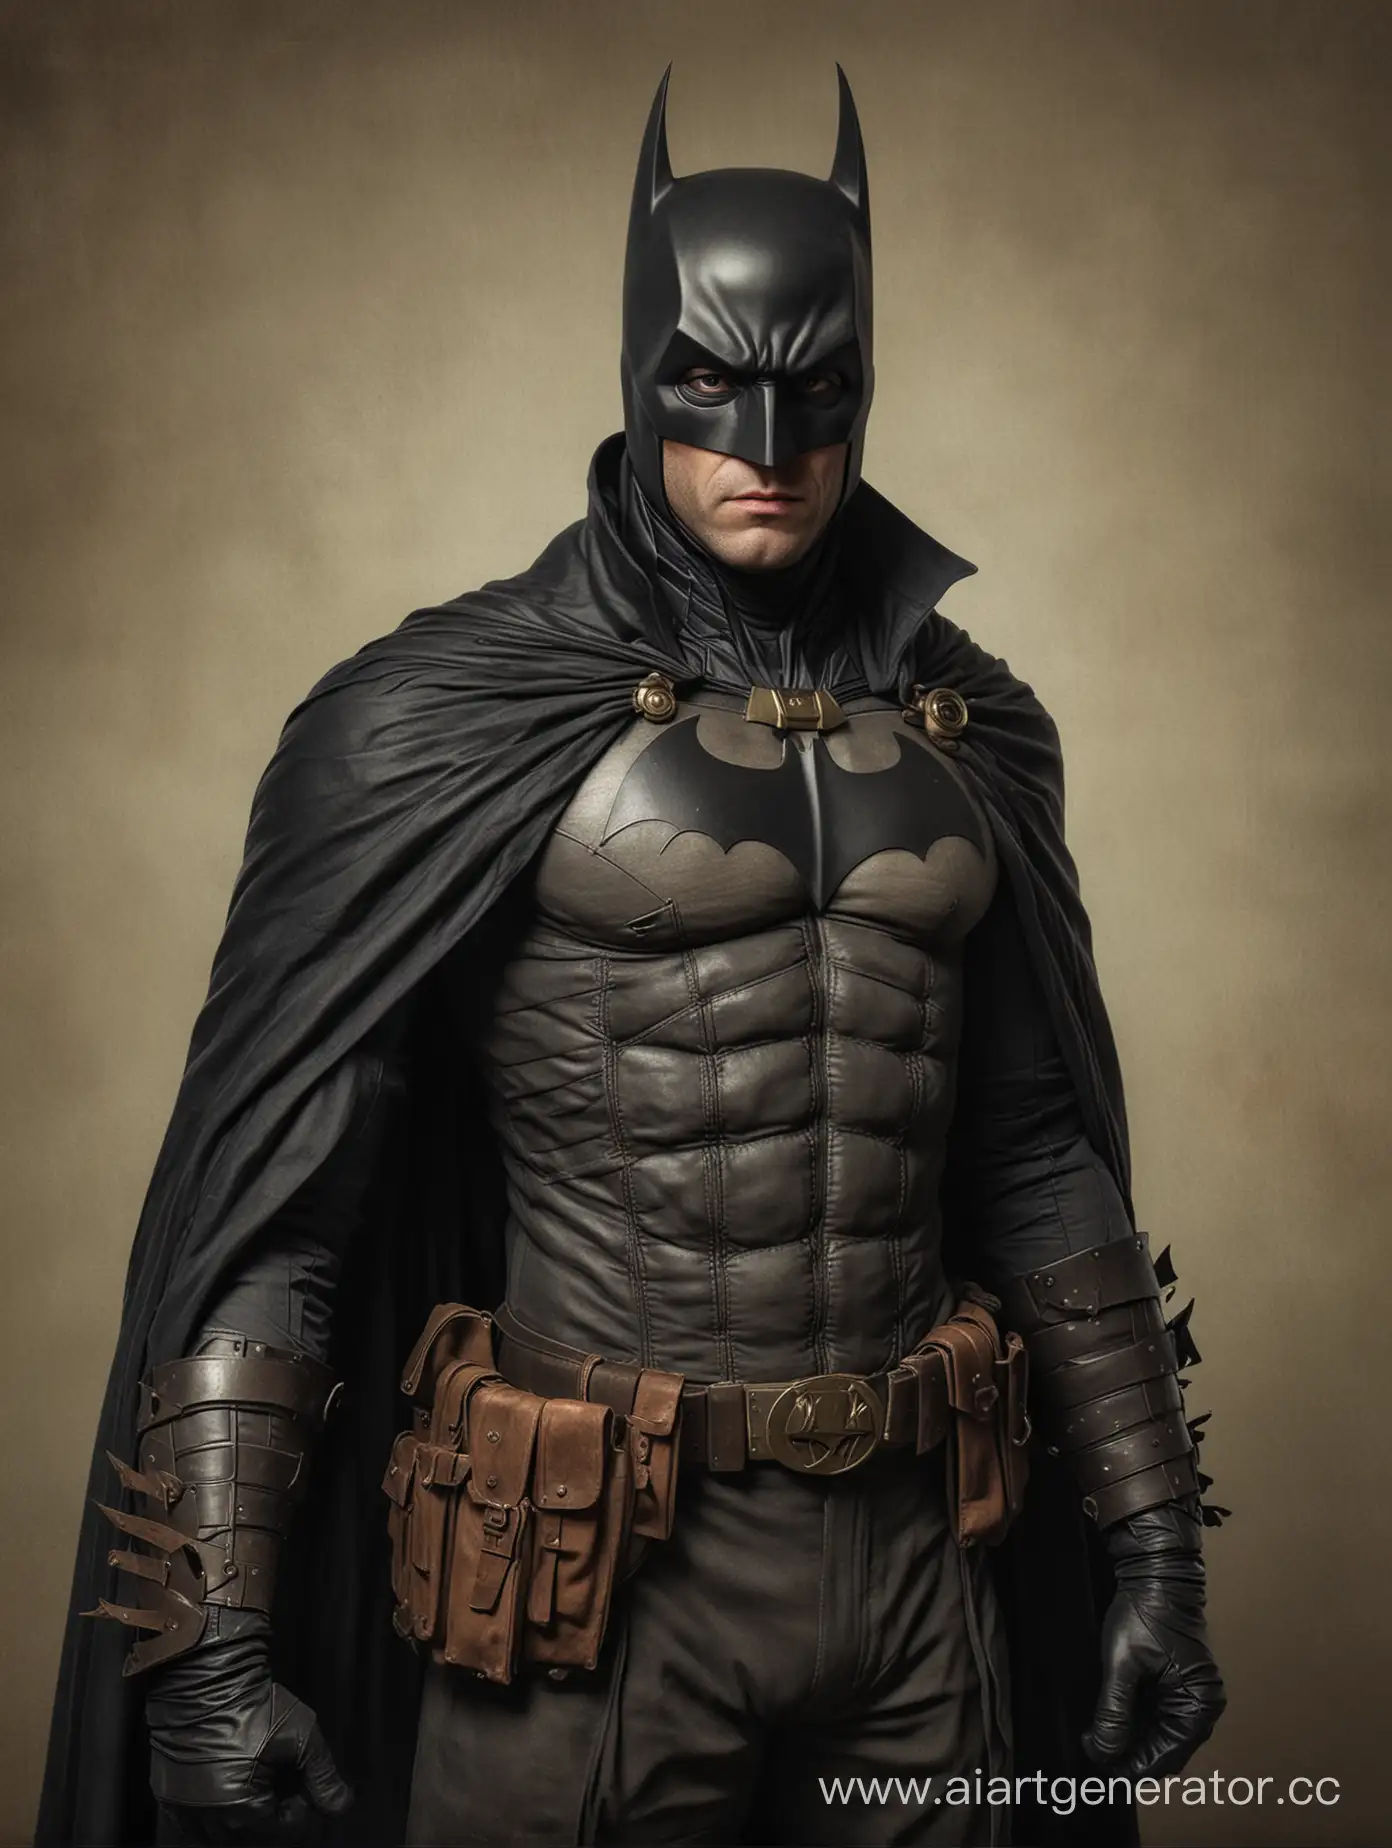 18th-Century-Batman-RetroStyled-Vigilante-in-Historical-Garb